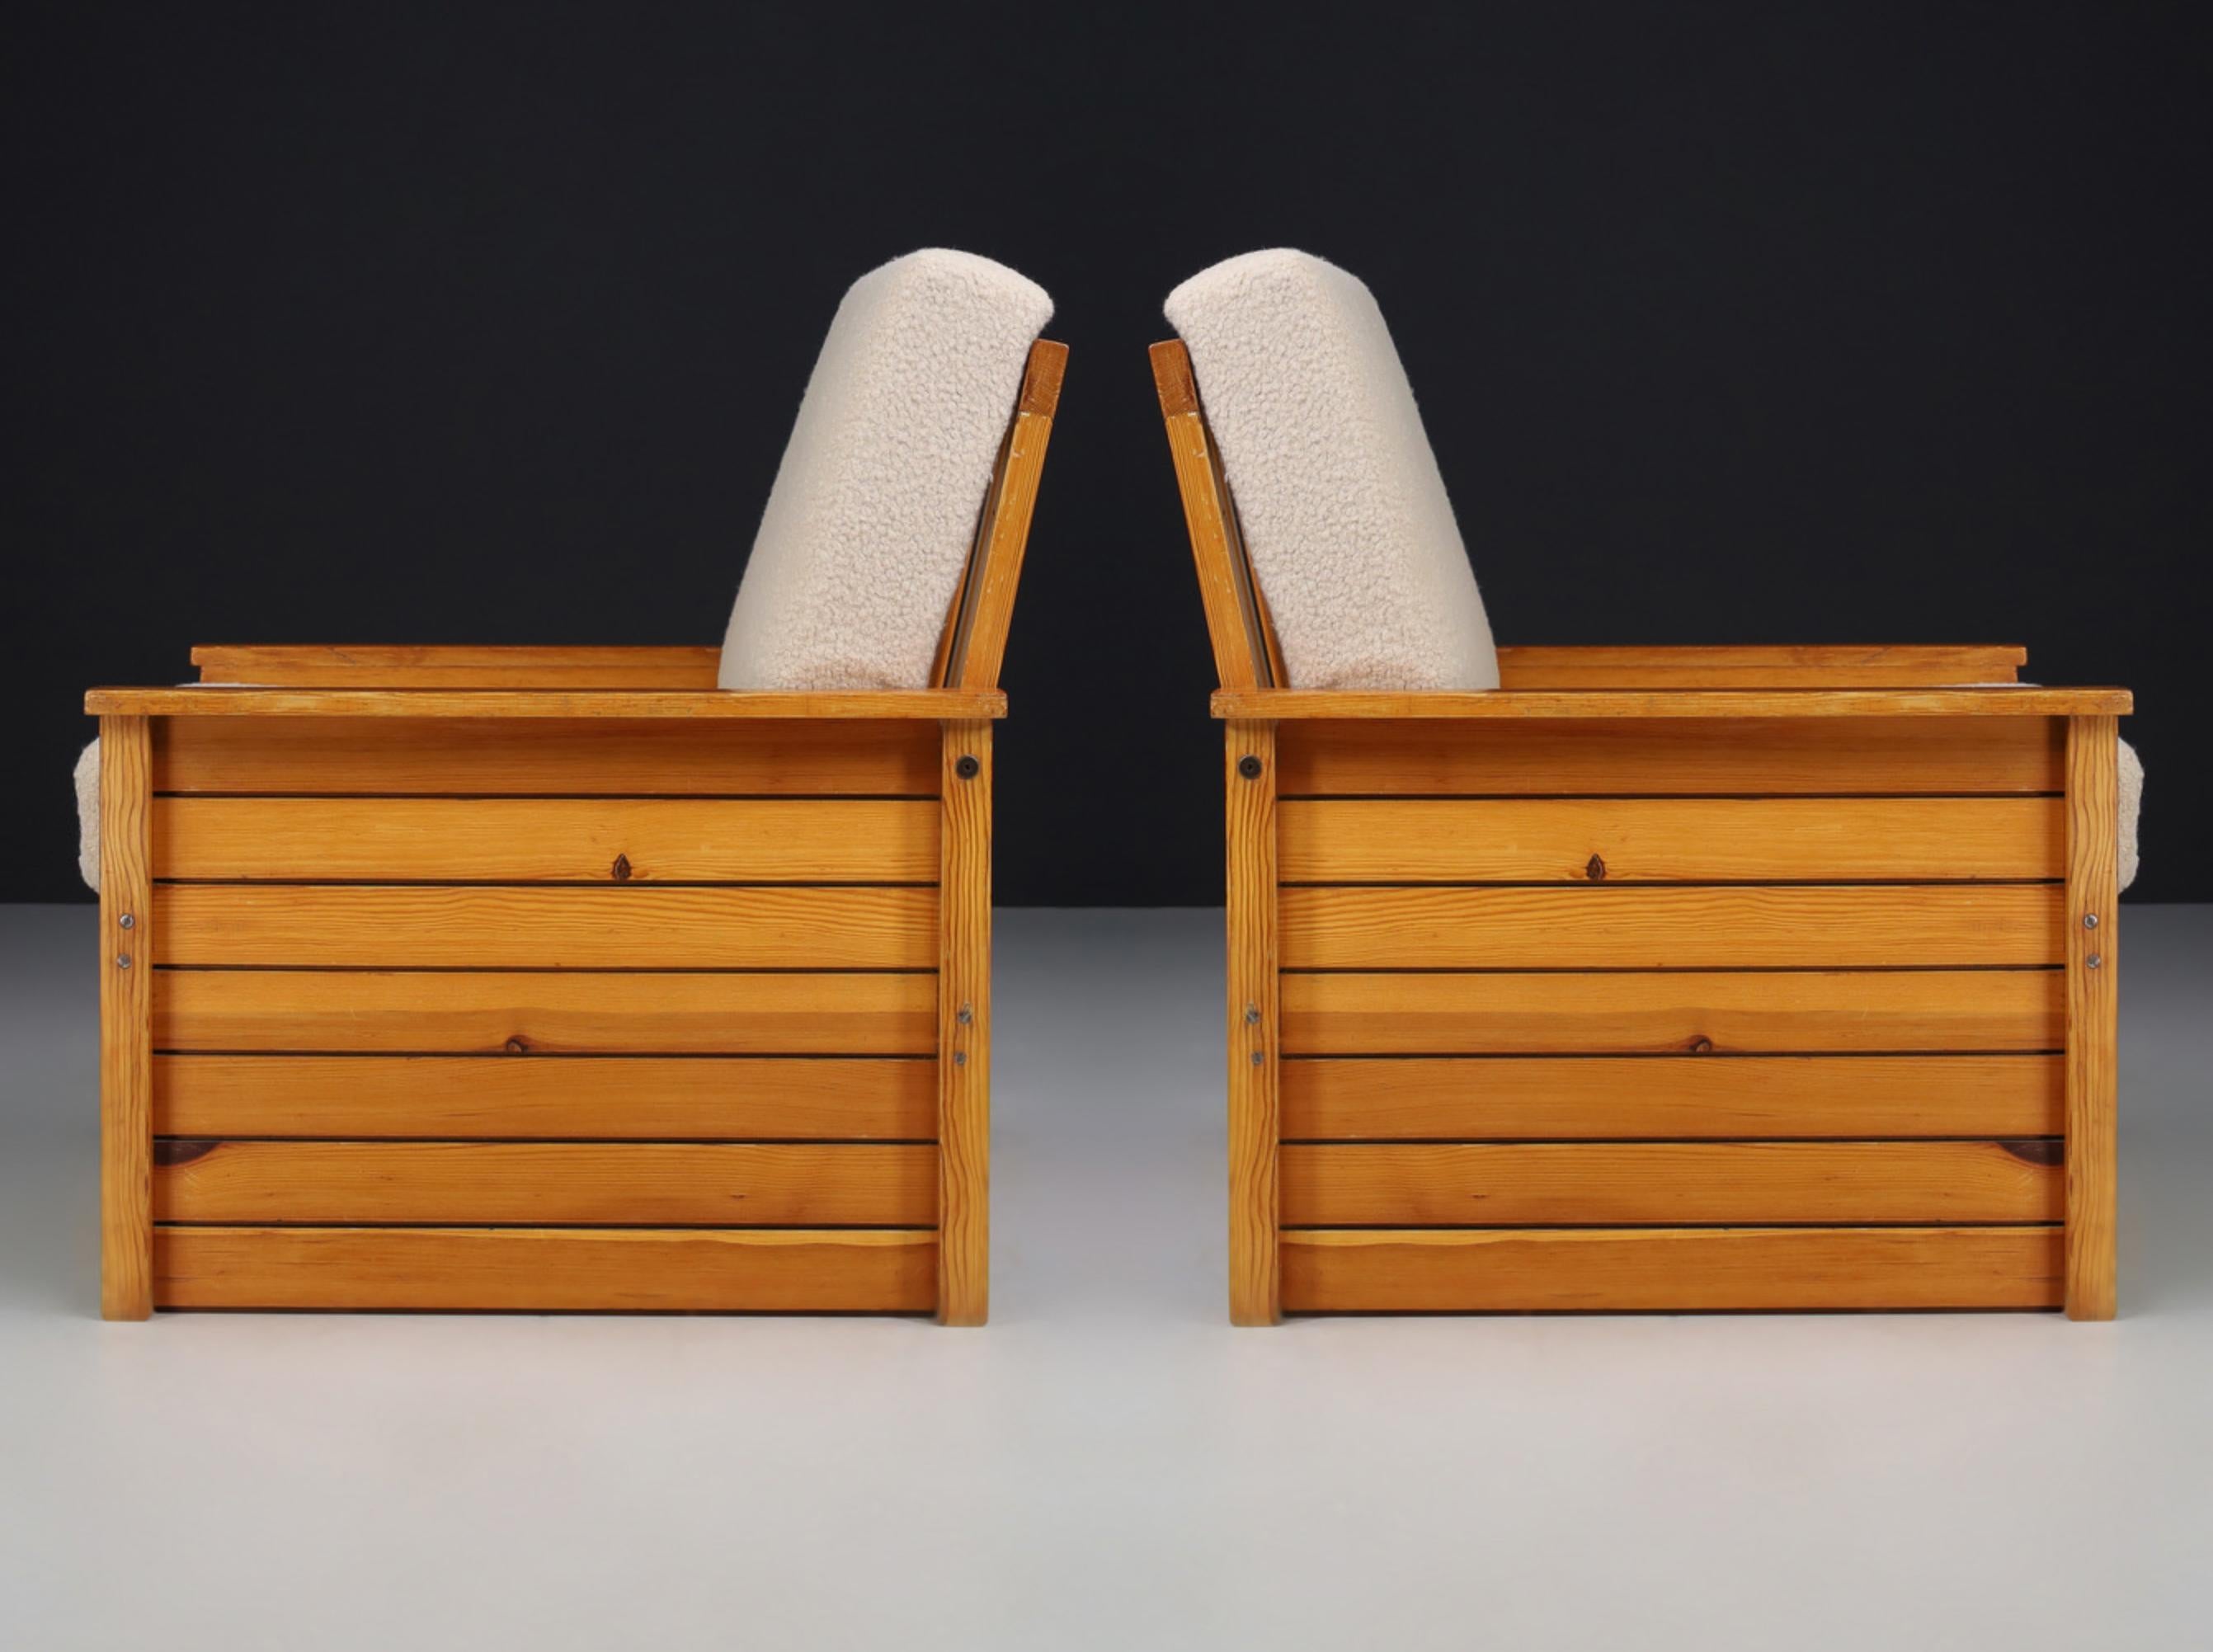 Chaises longues en pin et en tissu pelucheux, France années 1960

Paire française de deux chaises de salon en bois de pin et tissu teddy retapissé, conçue et fabriquée en France dans les années 1960. Ces deux fauteuils constitueraient un ajout